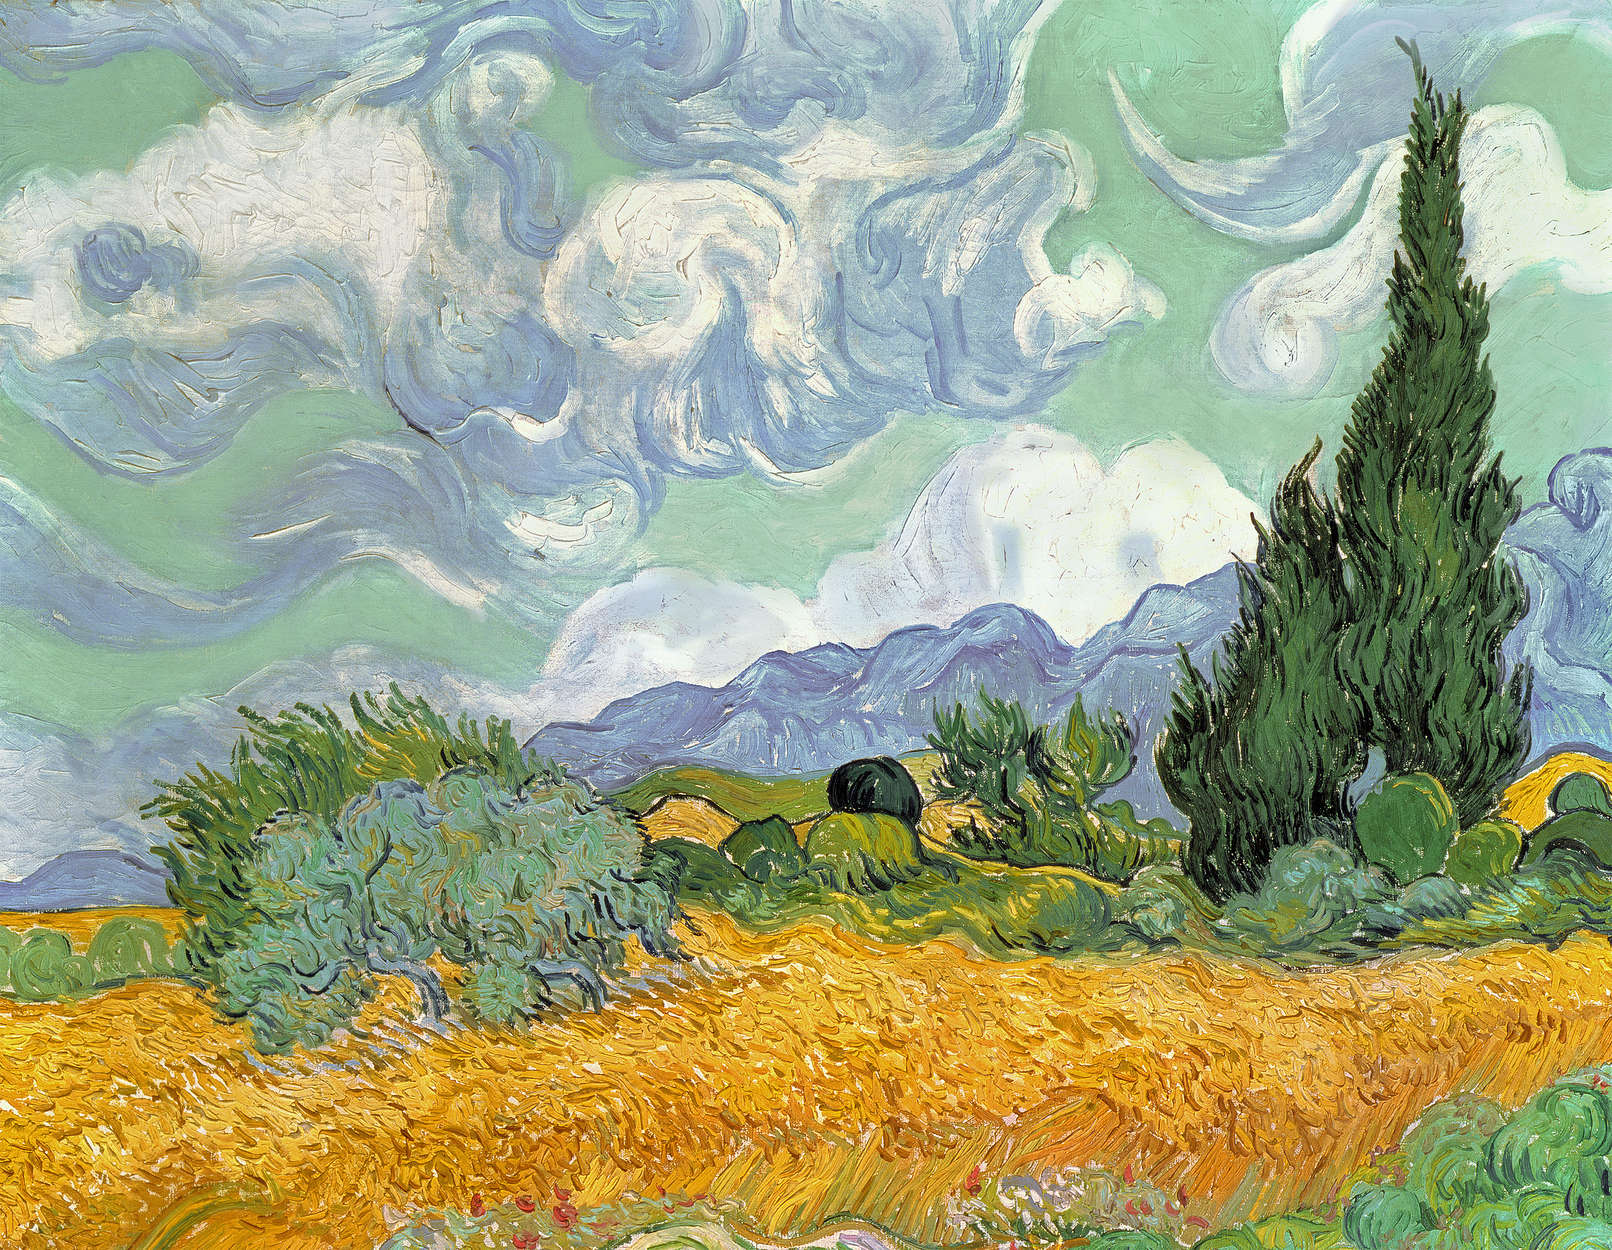             Fototapete "Weizenfeld mit Zypressen" von Vincent van Gogh
        